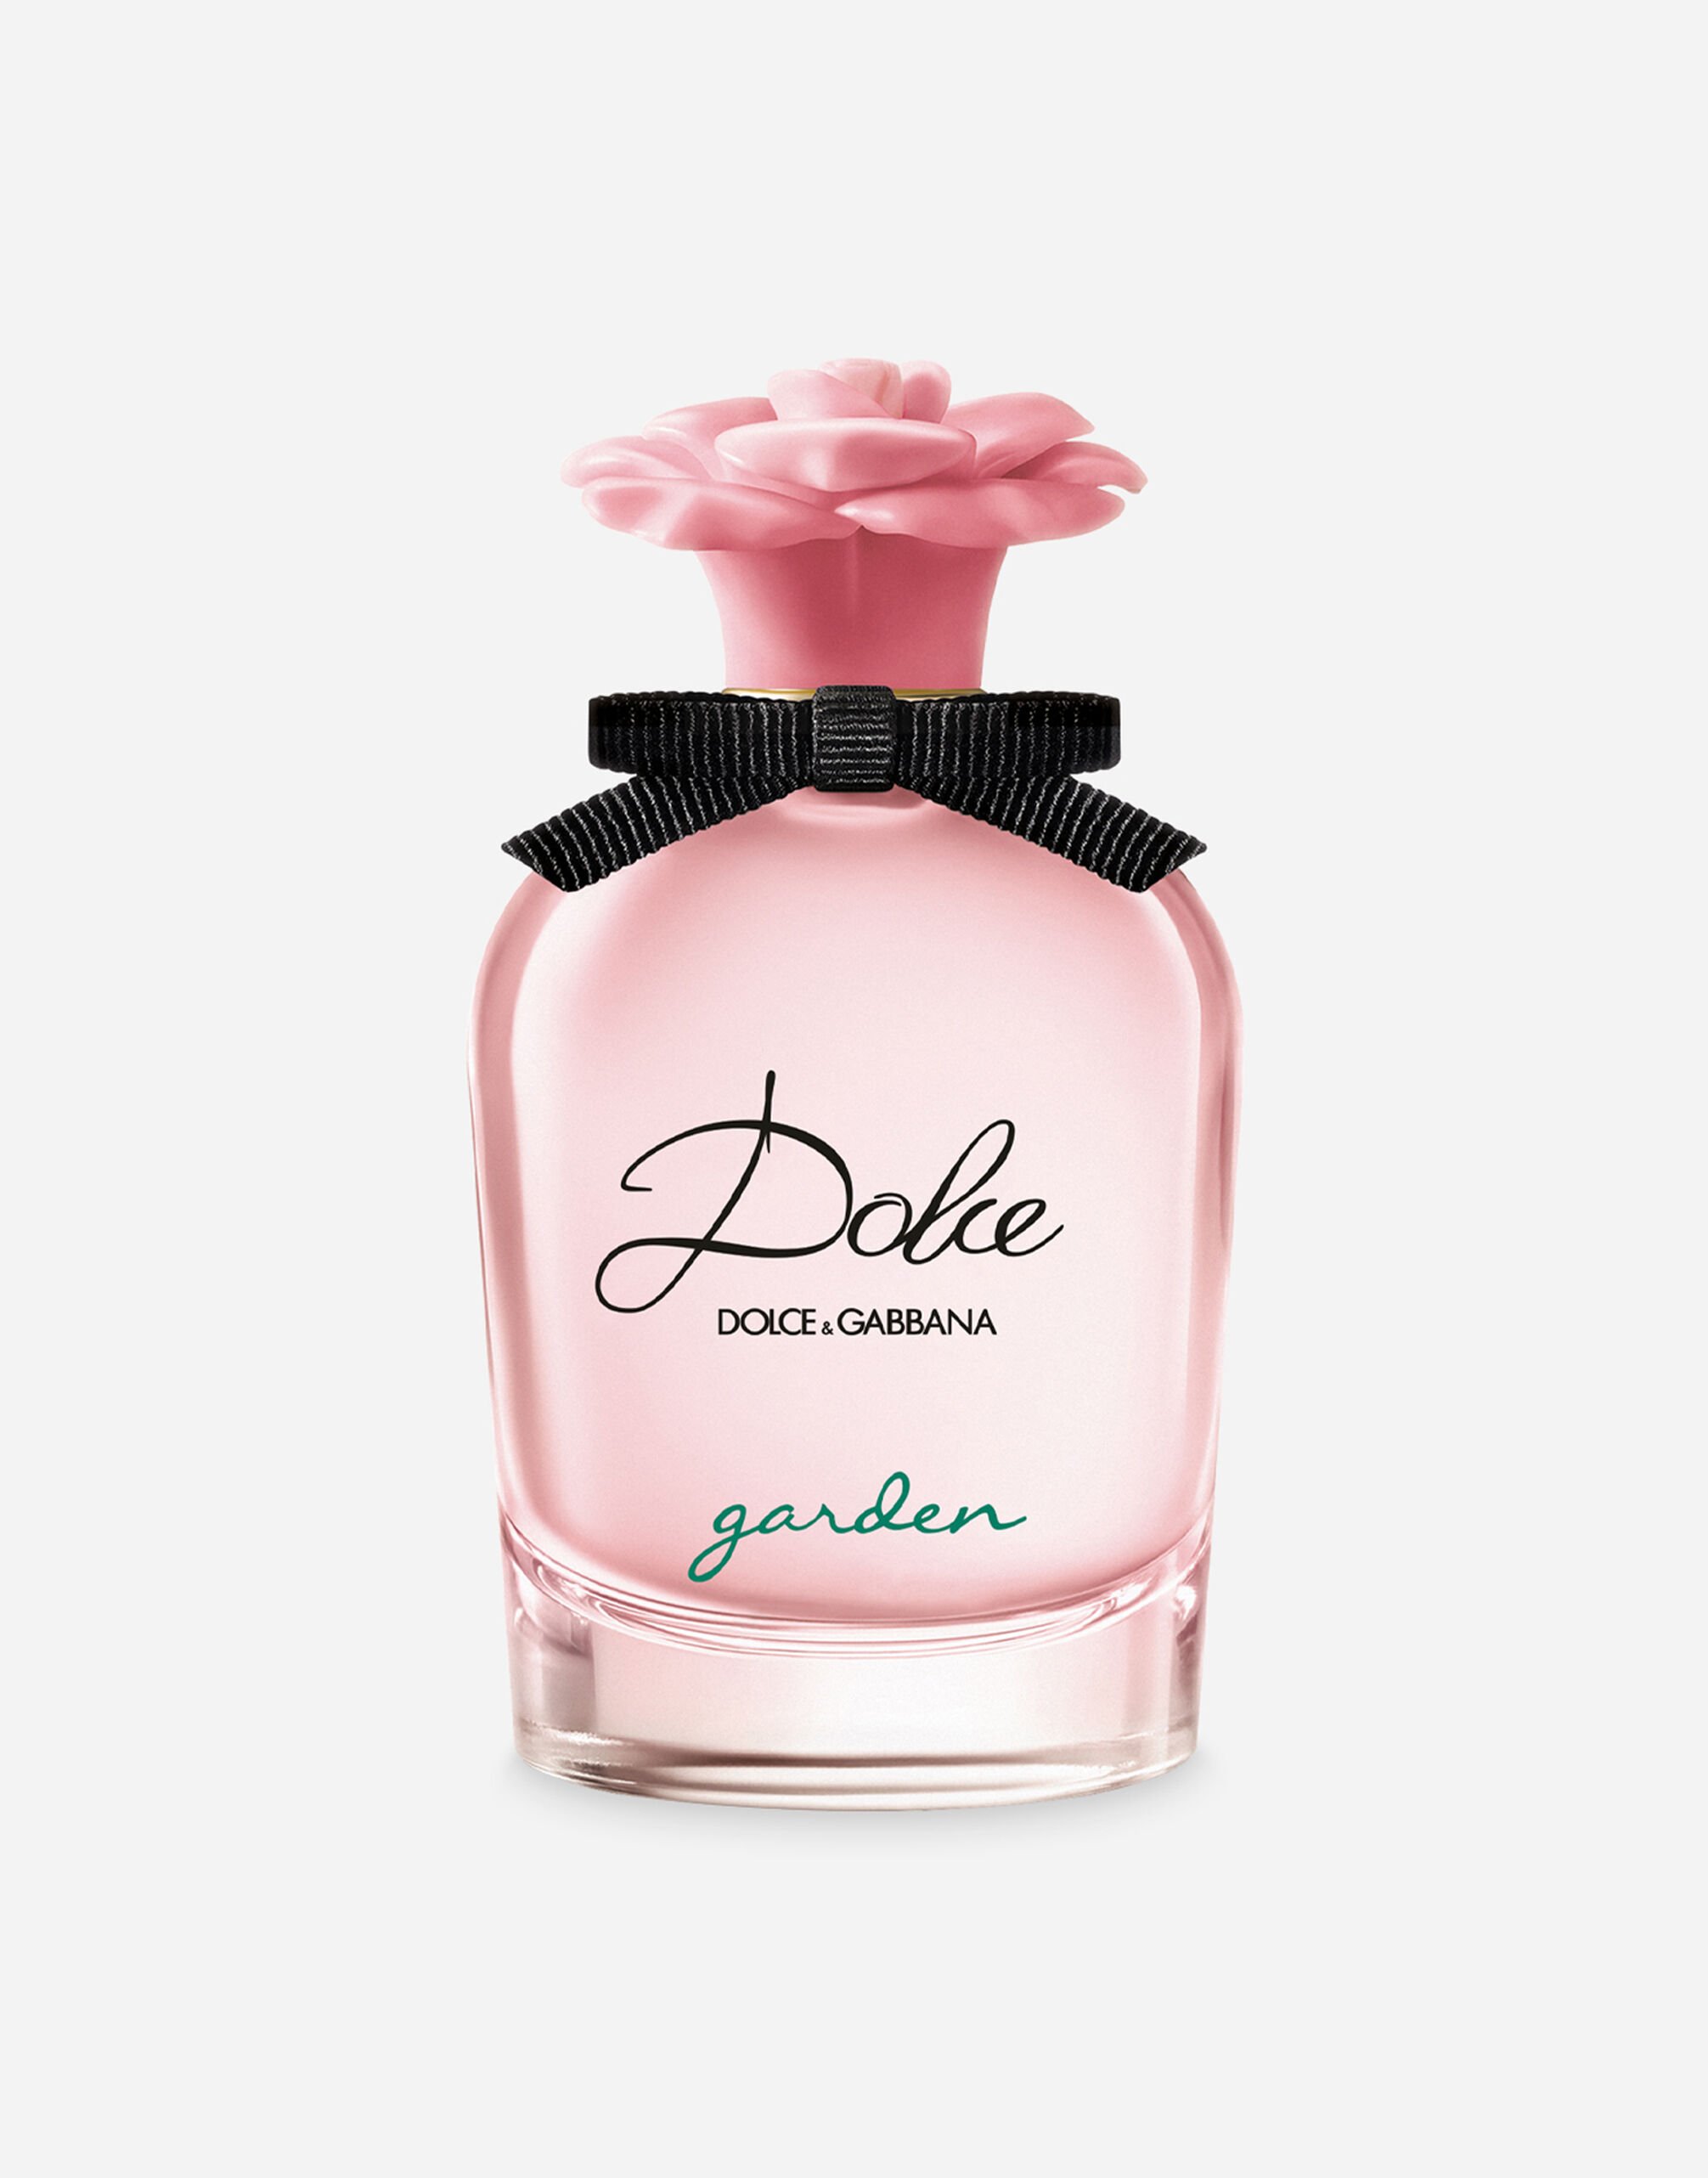 Dolce & Gabbana Dolce Garden Eau de Parfum - VP003BVP000